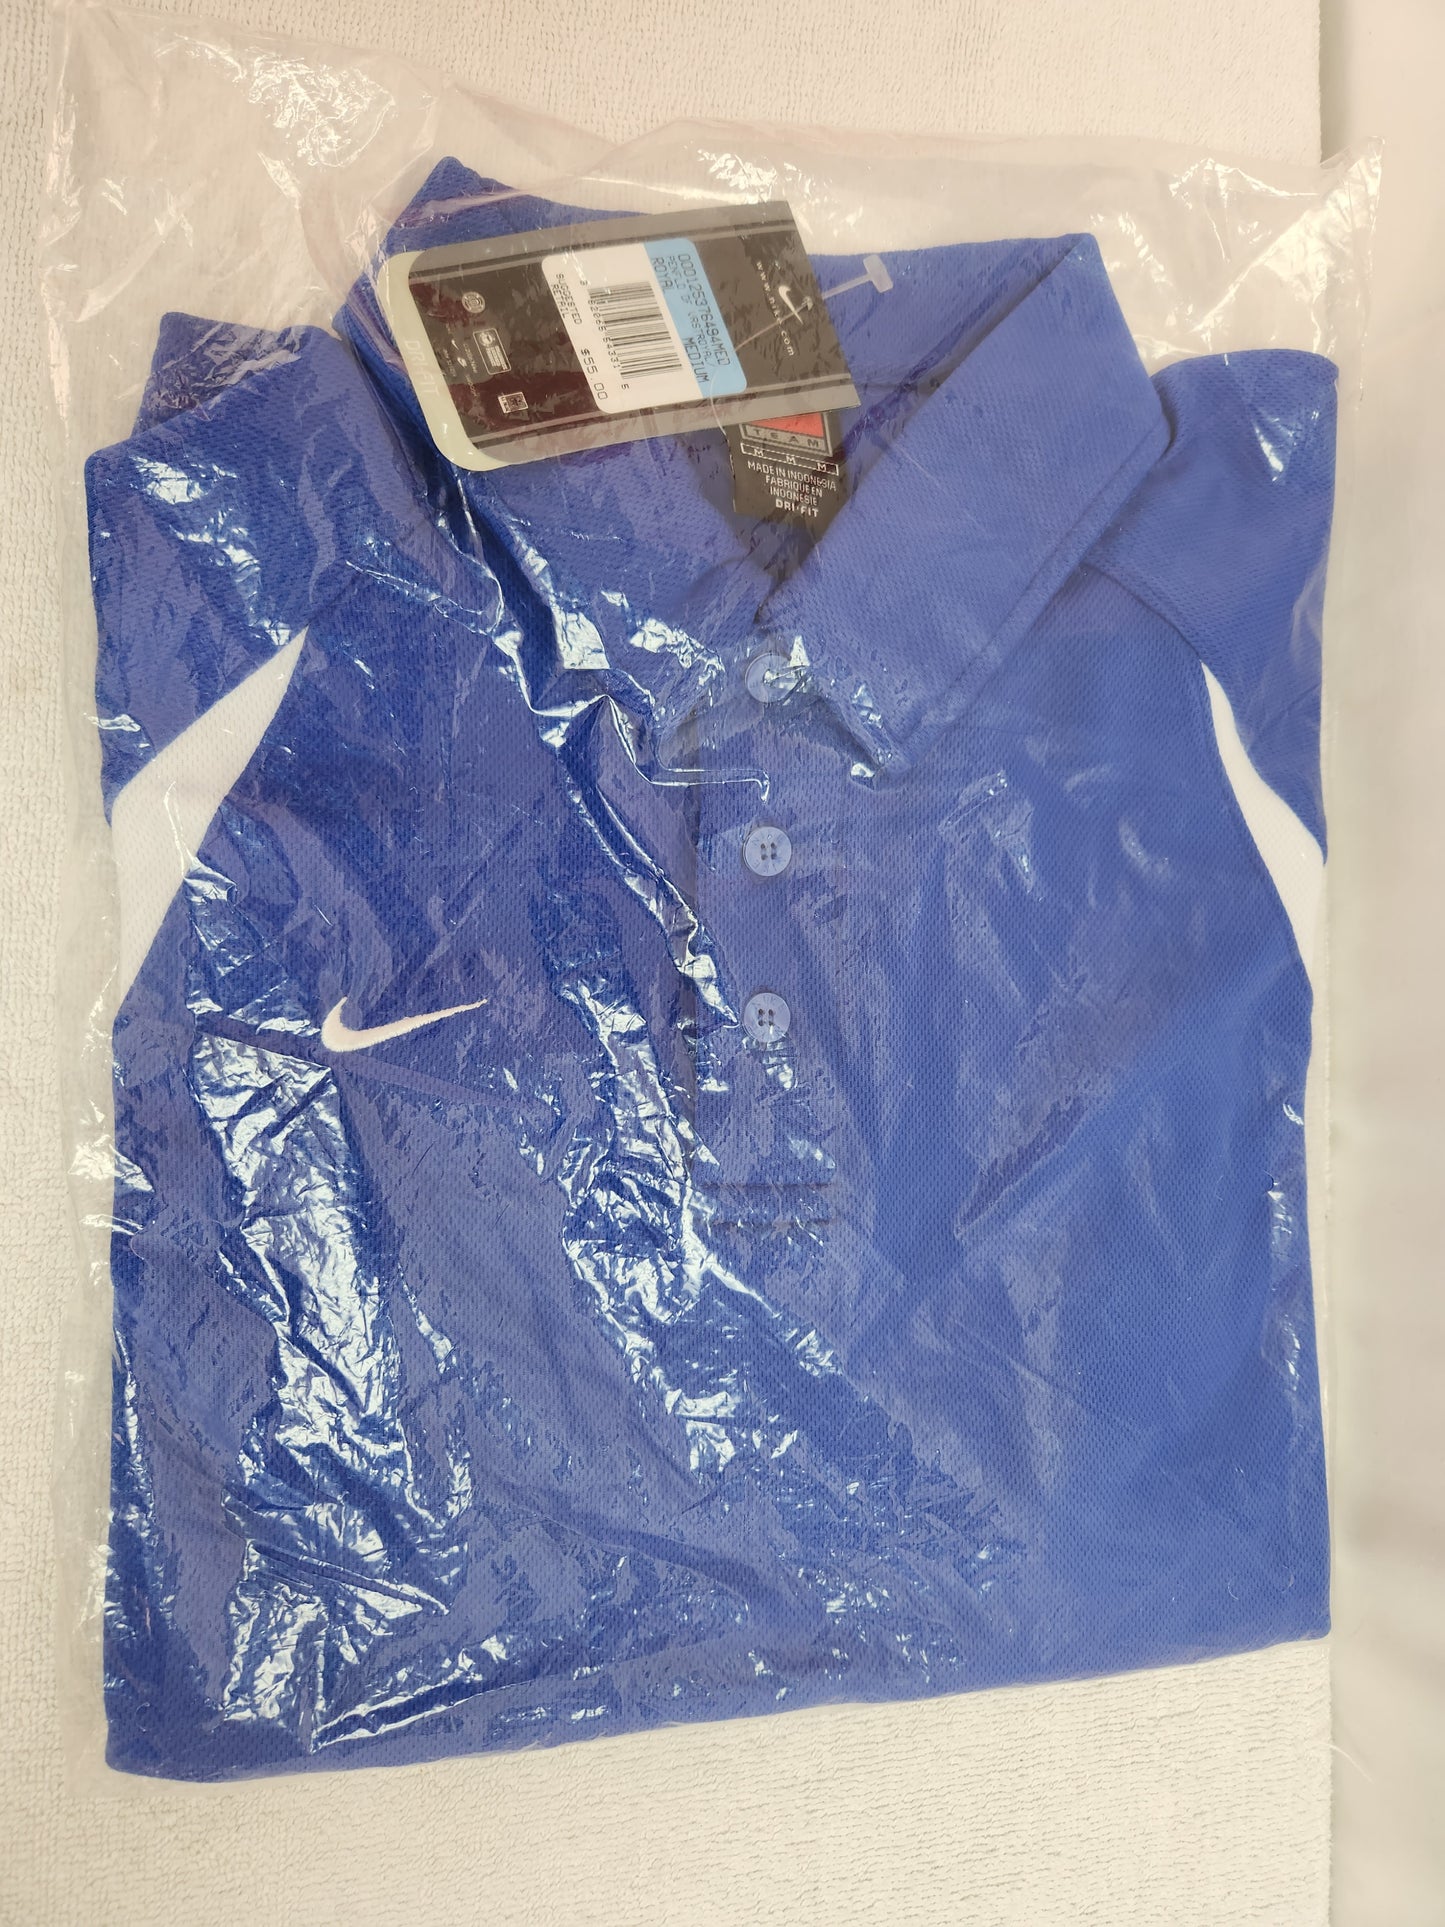 NWT - Nike Team Royal Blue/White Waffle Knit Dri-Fit Polo Shirt - M